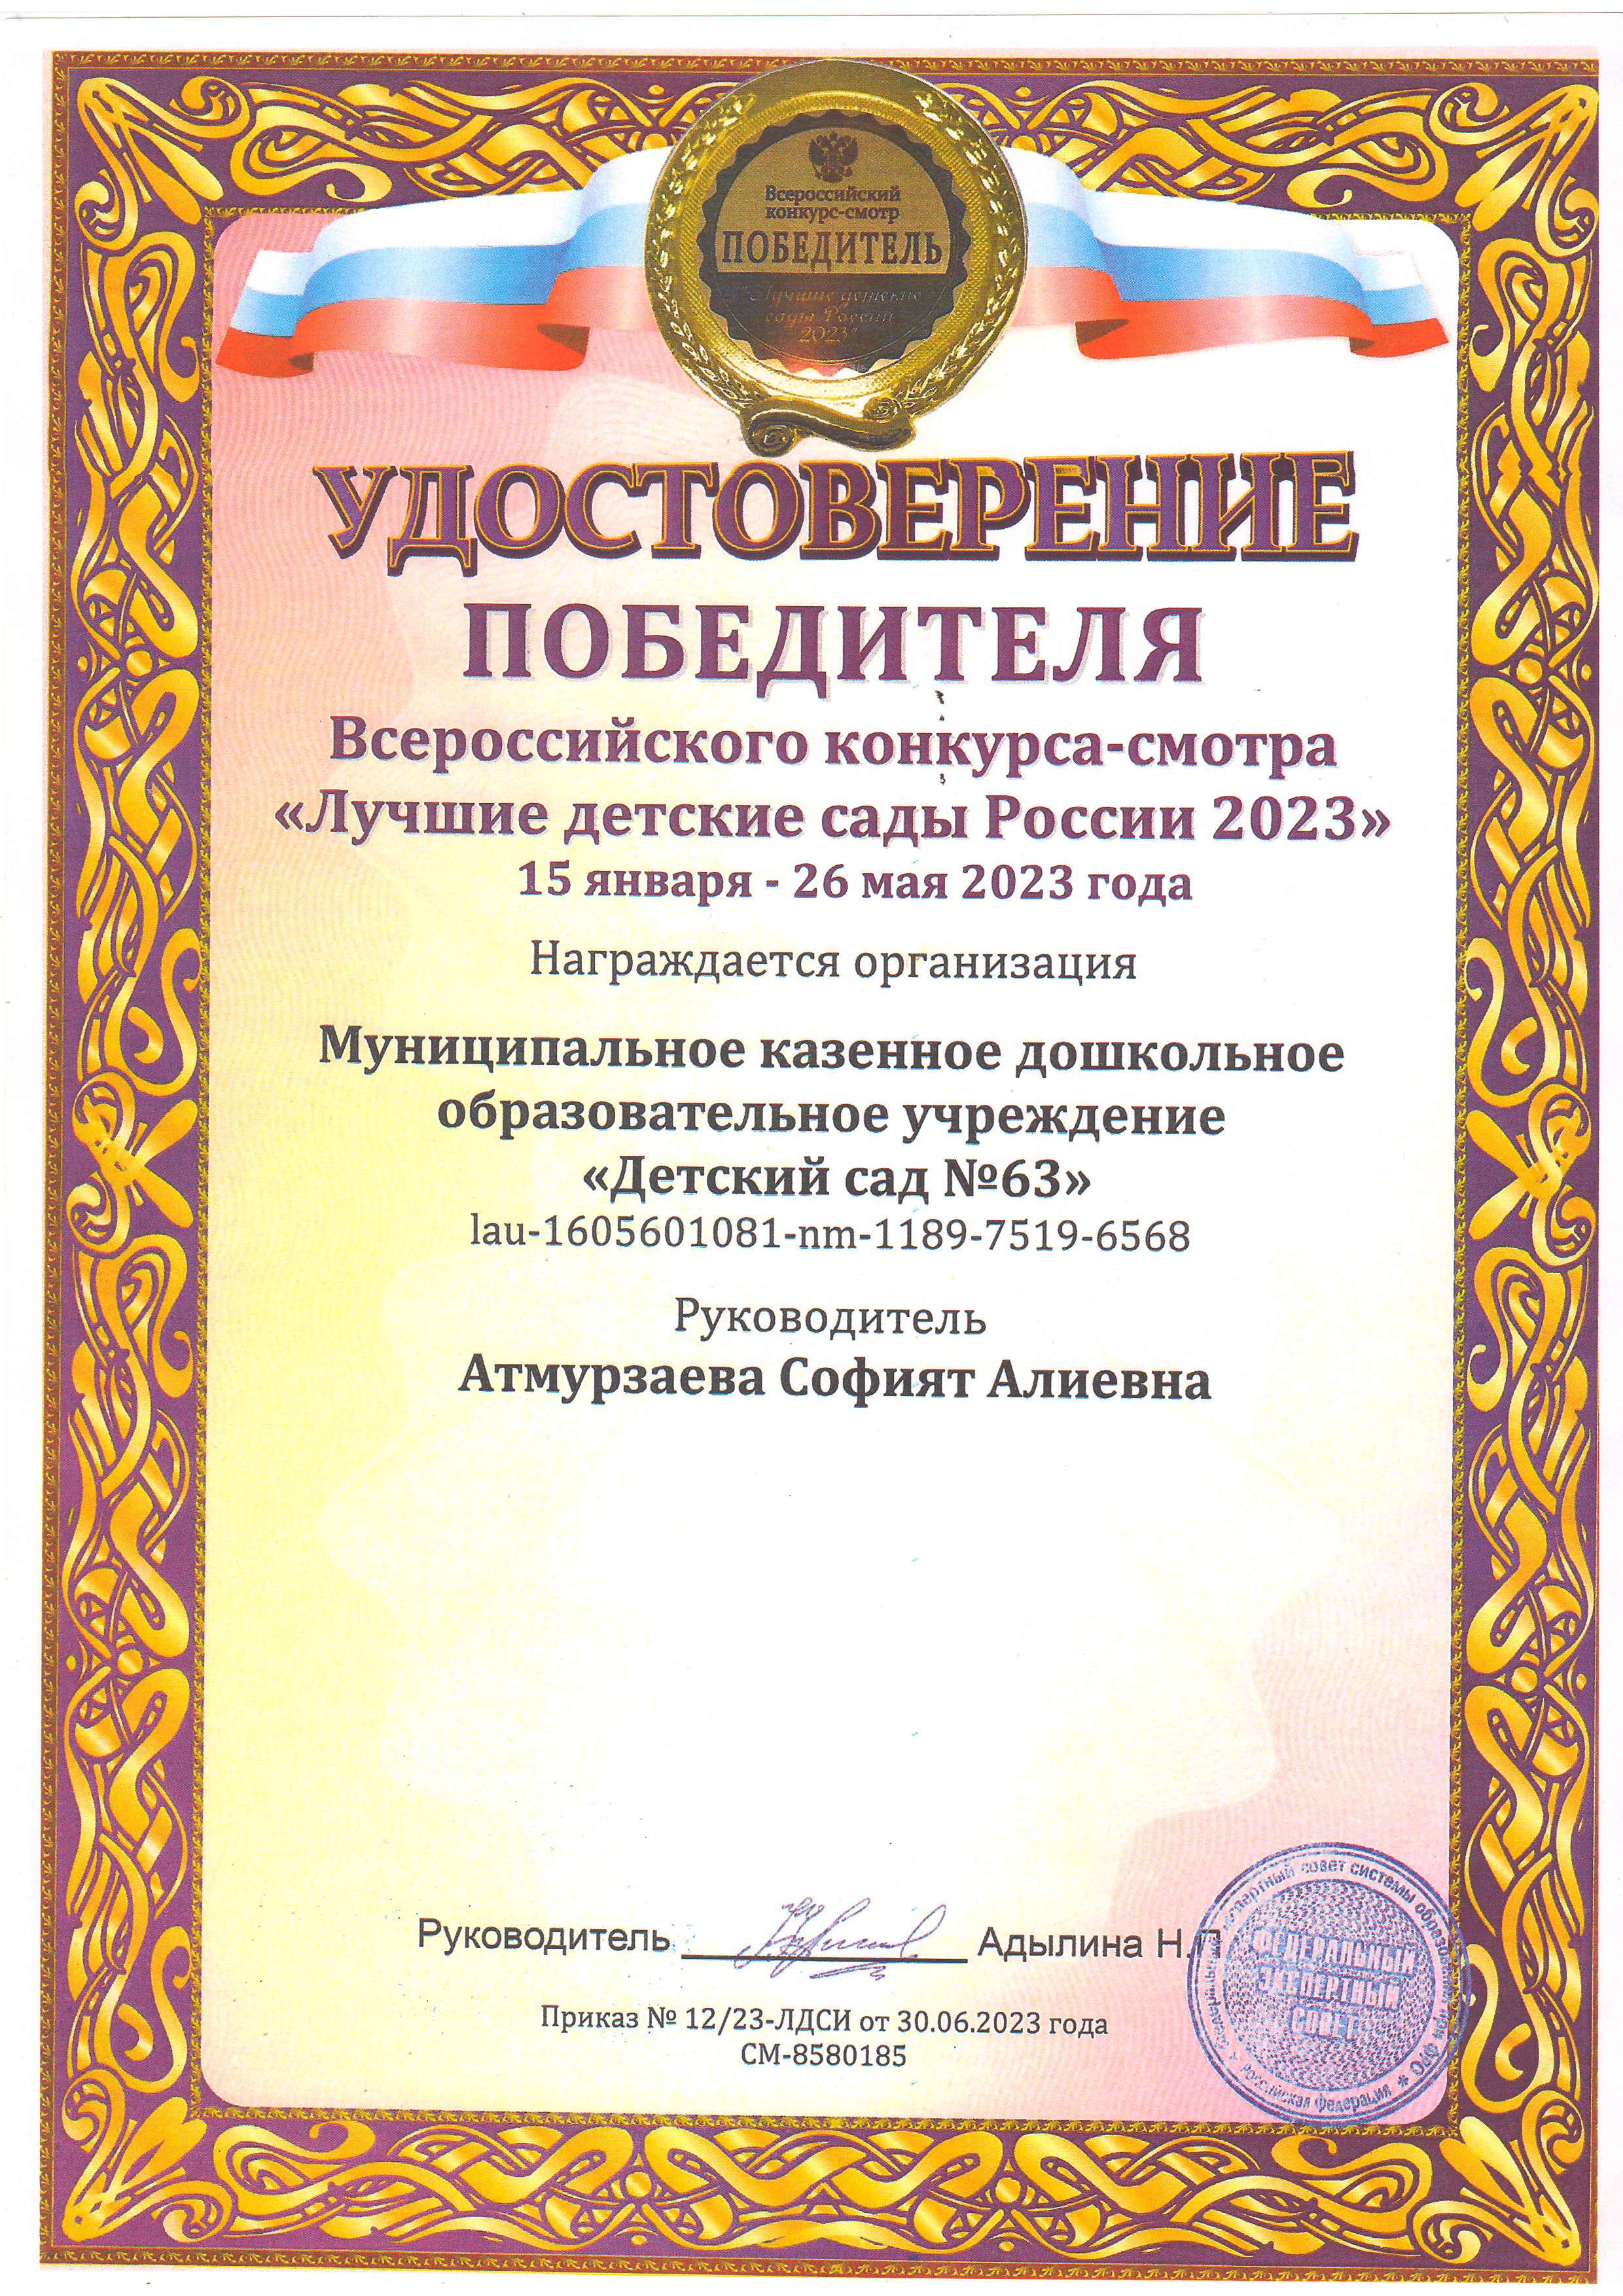 Участие в Всероссийском конкурсе Лучшие сады России 2023 1